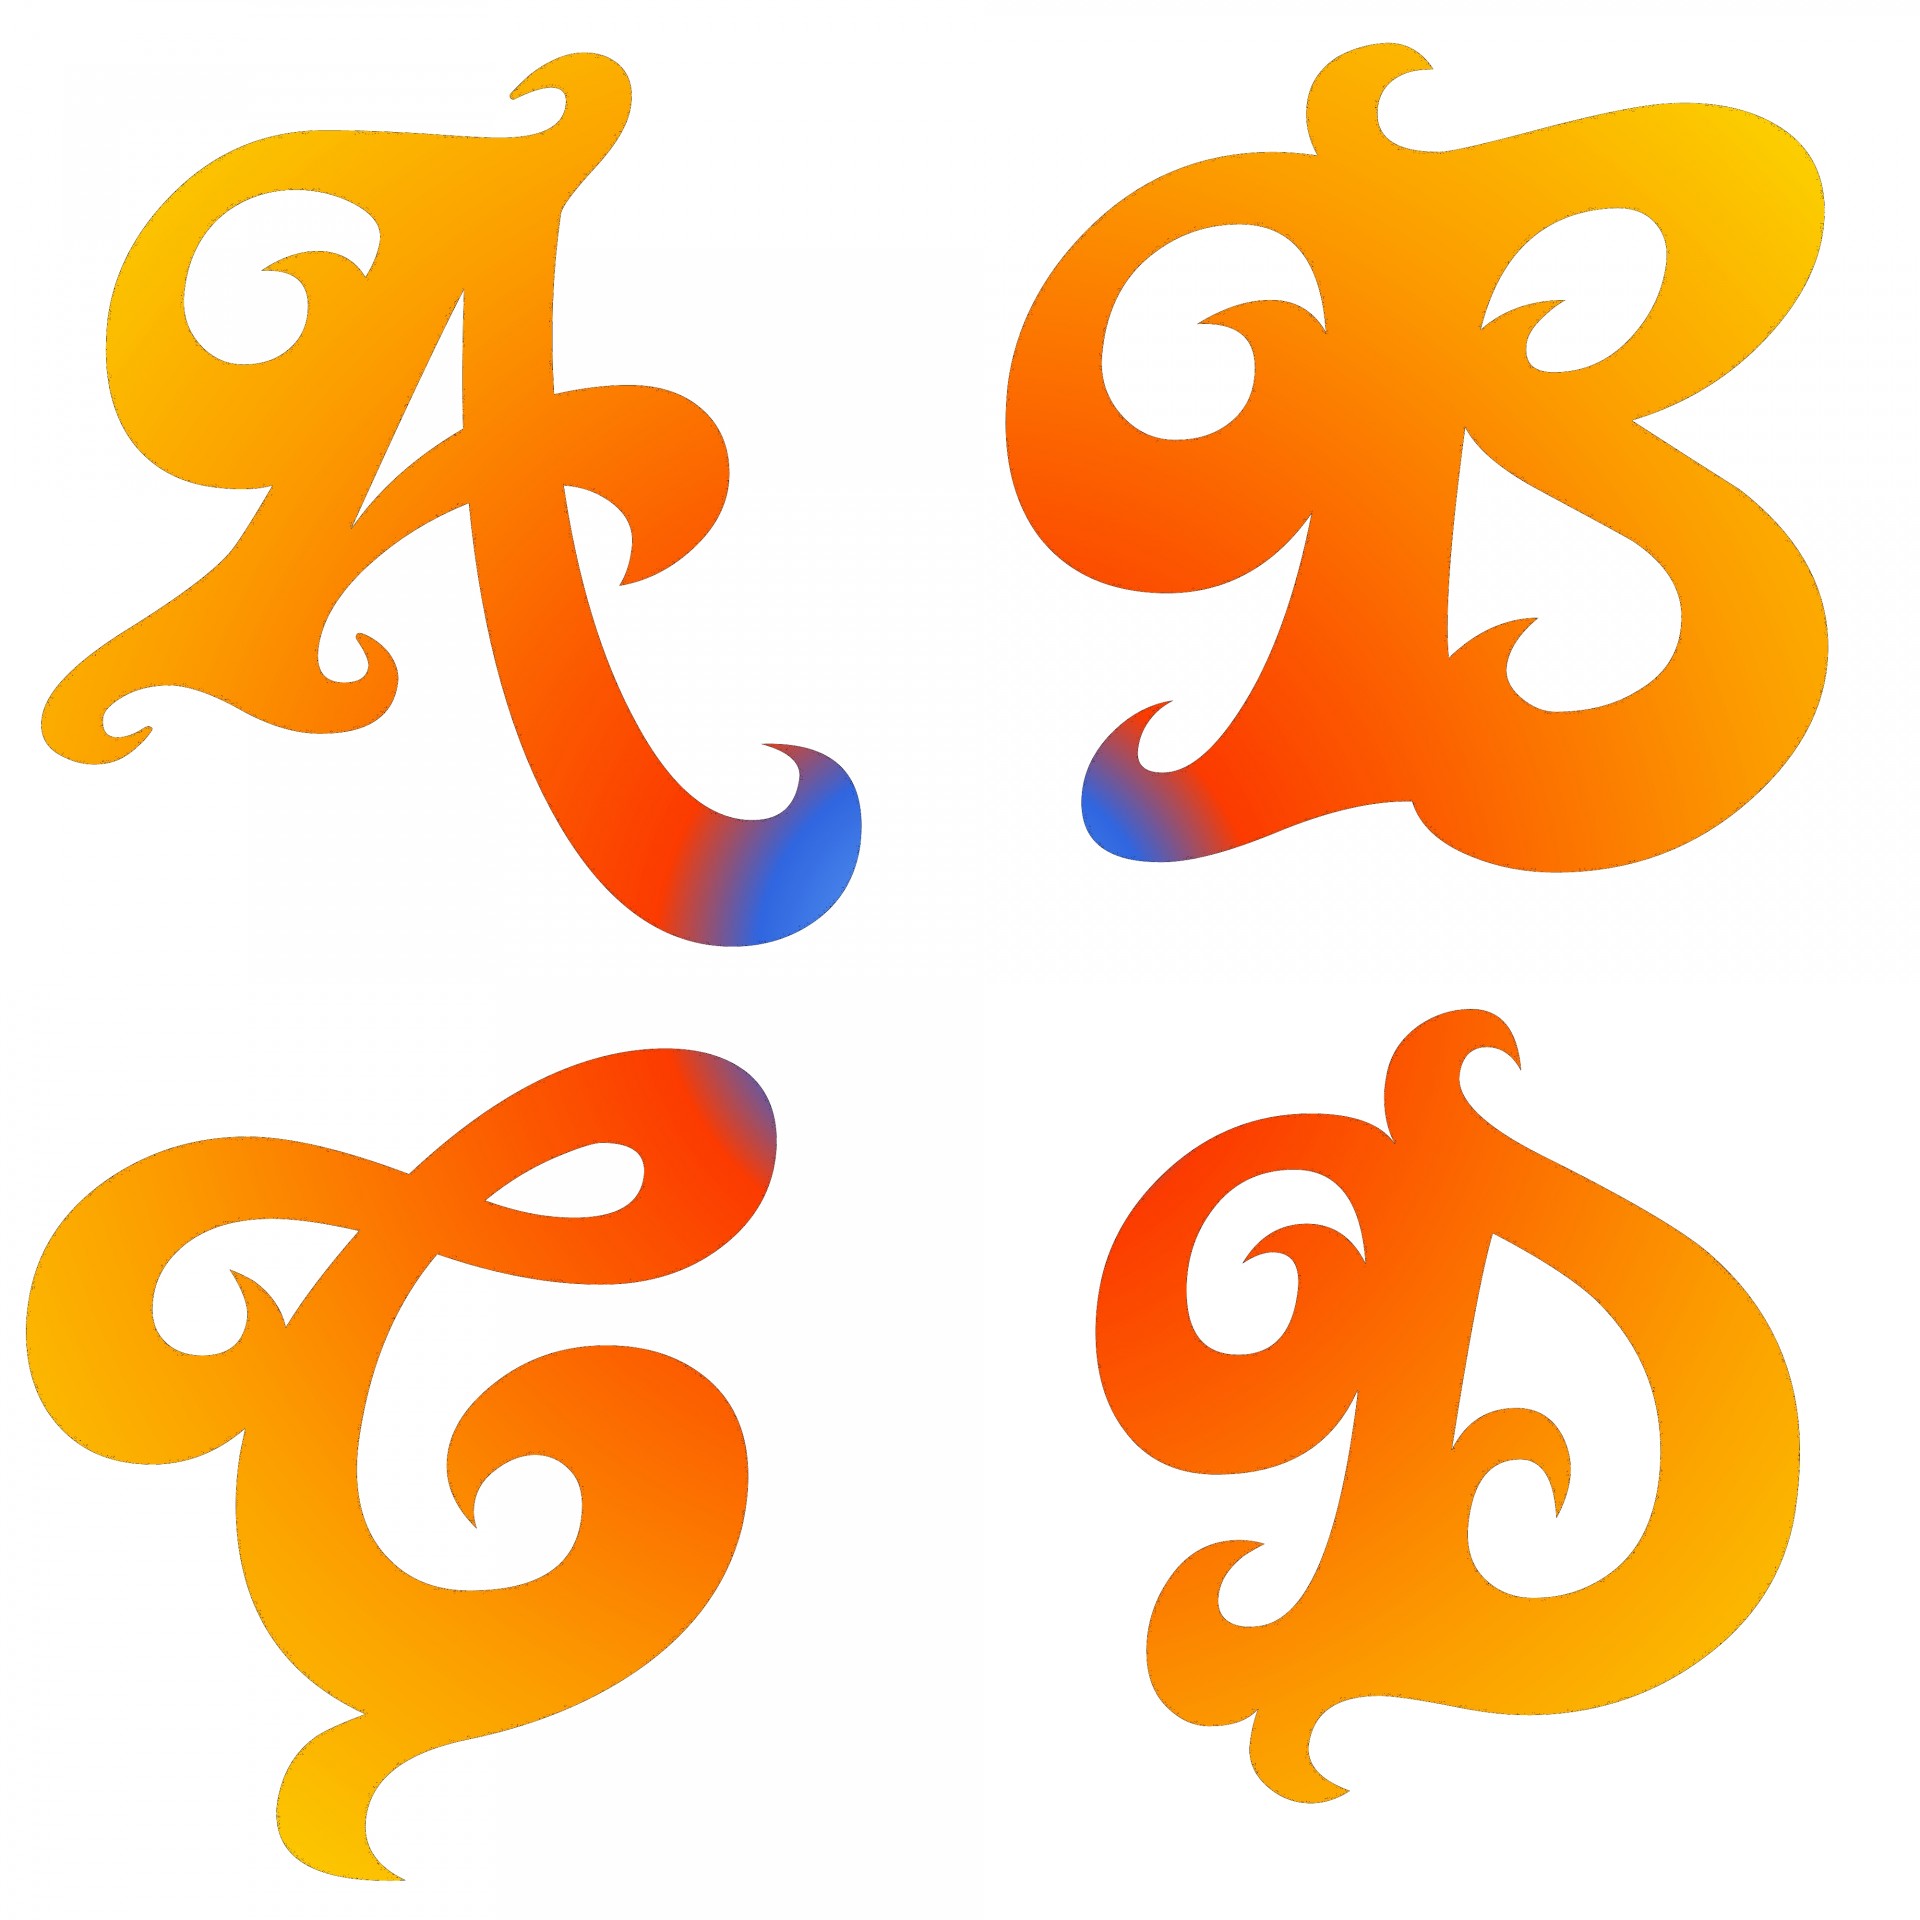 A B C D Letters